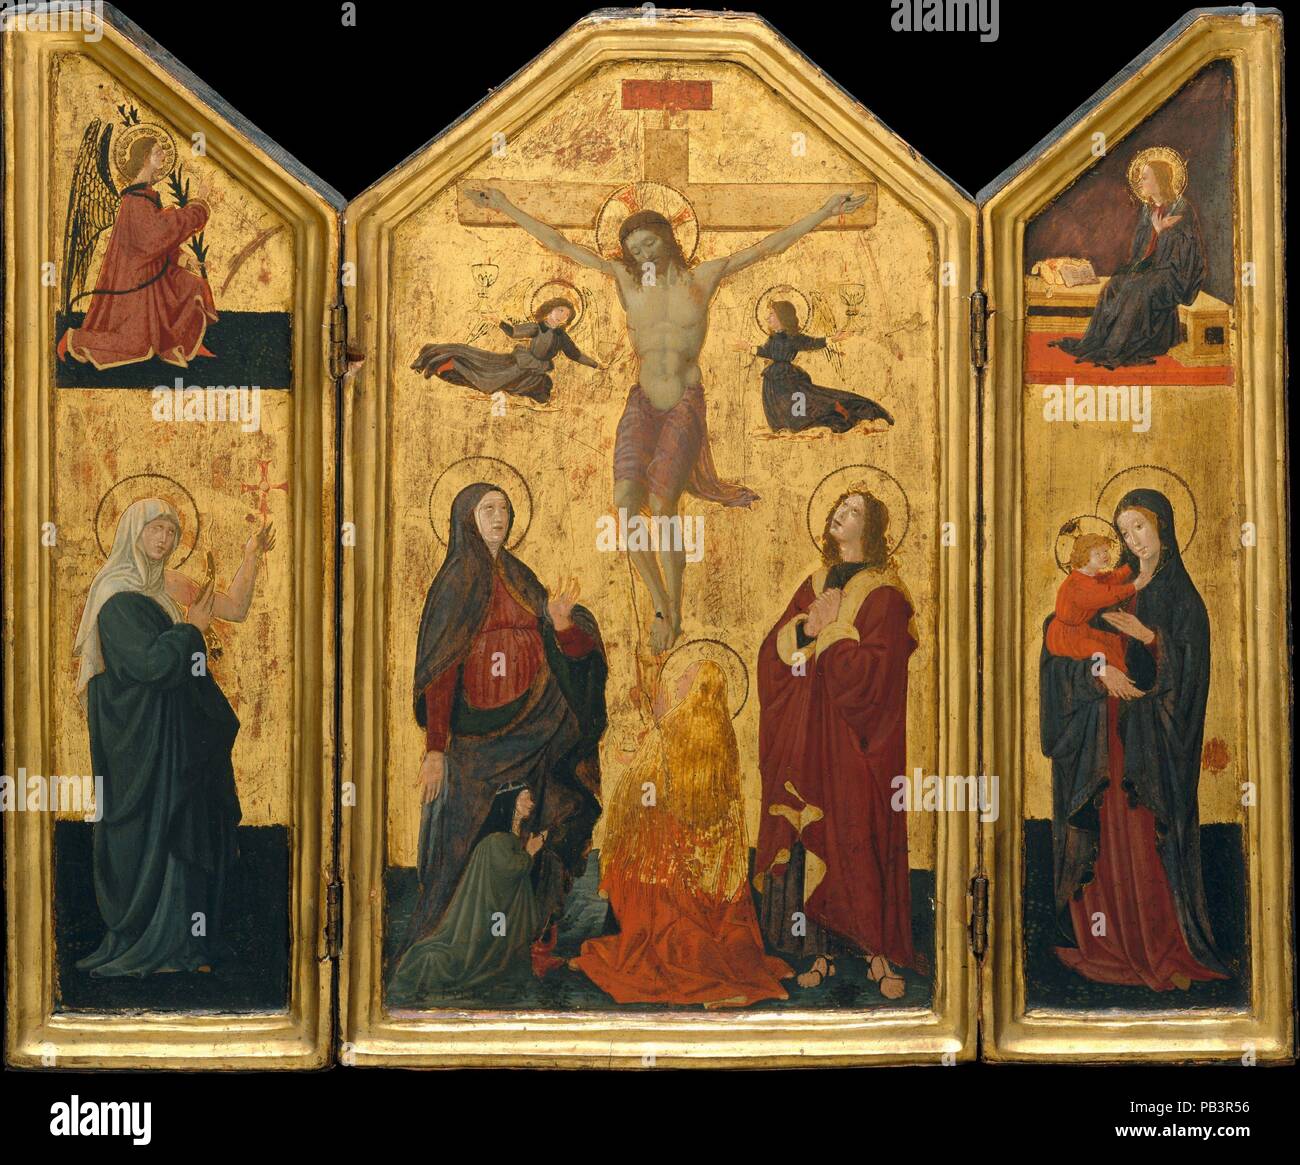 La crocifissione. Artista: Paolo Uccello (Paolo di Dono) (Italiano, 1397-1475 Firenze Firenze). Dimensioni: sagomati superiore, pannello centrale, complessivamente, con telaio impegnato, 18 x 11 in. (45,7 x 27,9 cm); pannello centrale, superfici verniciate 16 1/2 x 9 1/2 in. (41,9 x 24,1 cm); l'ala sinistra, nel complesso, con telaio impegnato, 18 x 5 5/8 in. (45,7 x 14,3 cm); l'ala sinistra, superfici verniciate 16 1/2 x 4 1/4 in. (41,9 x 10,8 cm); l'ala destra, complessivamente, con telaio impegnato, 18 x 5 1/4 in. (45,7 x 13,3 cm); l'ala destra, superfici verniciate 16 1/2 x 3 3/4 in. (41,9 x 9,5 cm). Data: probabilmente mid-1450s. Uccello è più noto per la sua battaglia Foto Stock